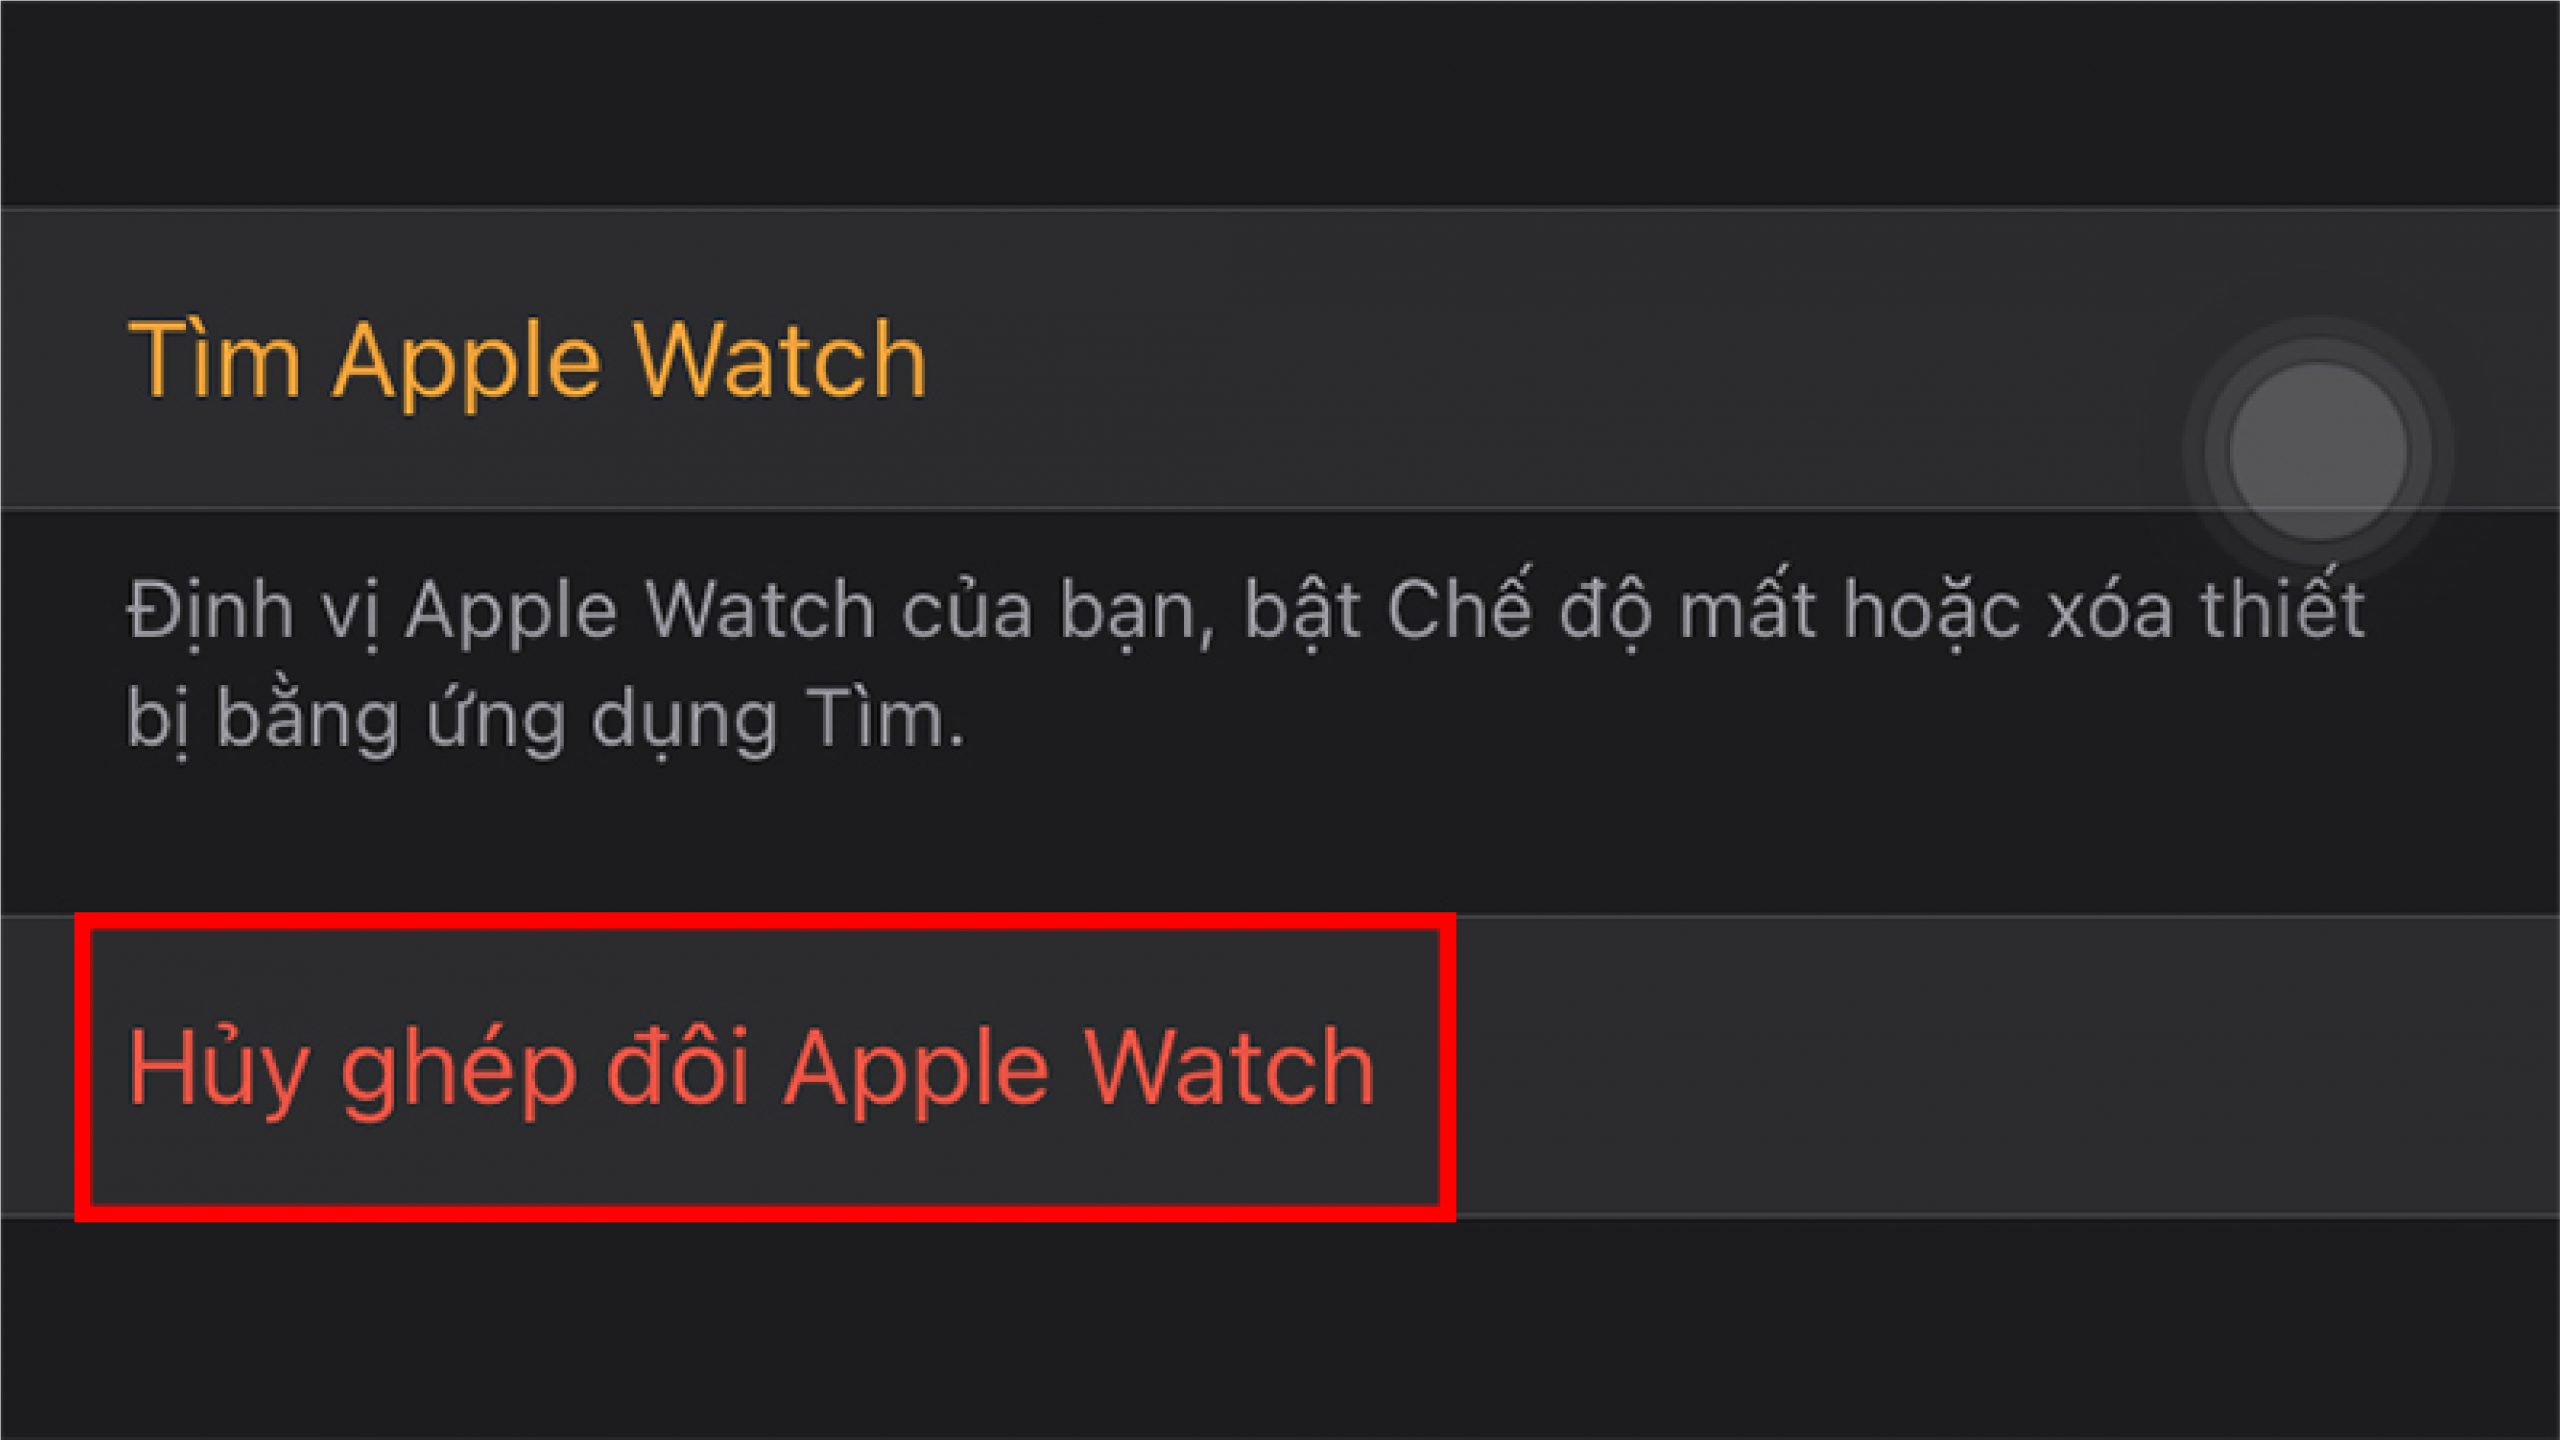  cách hủy ghép đôi Apple Watch cũ với iPhone